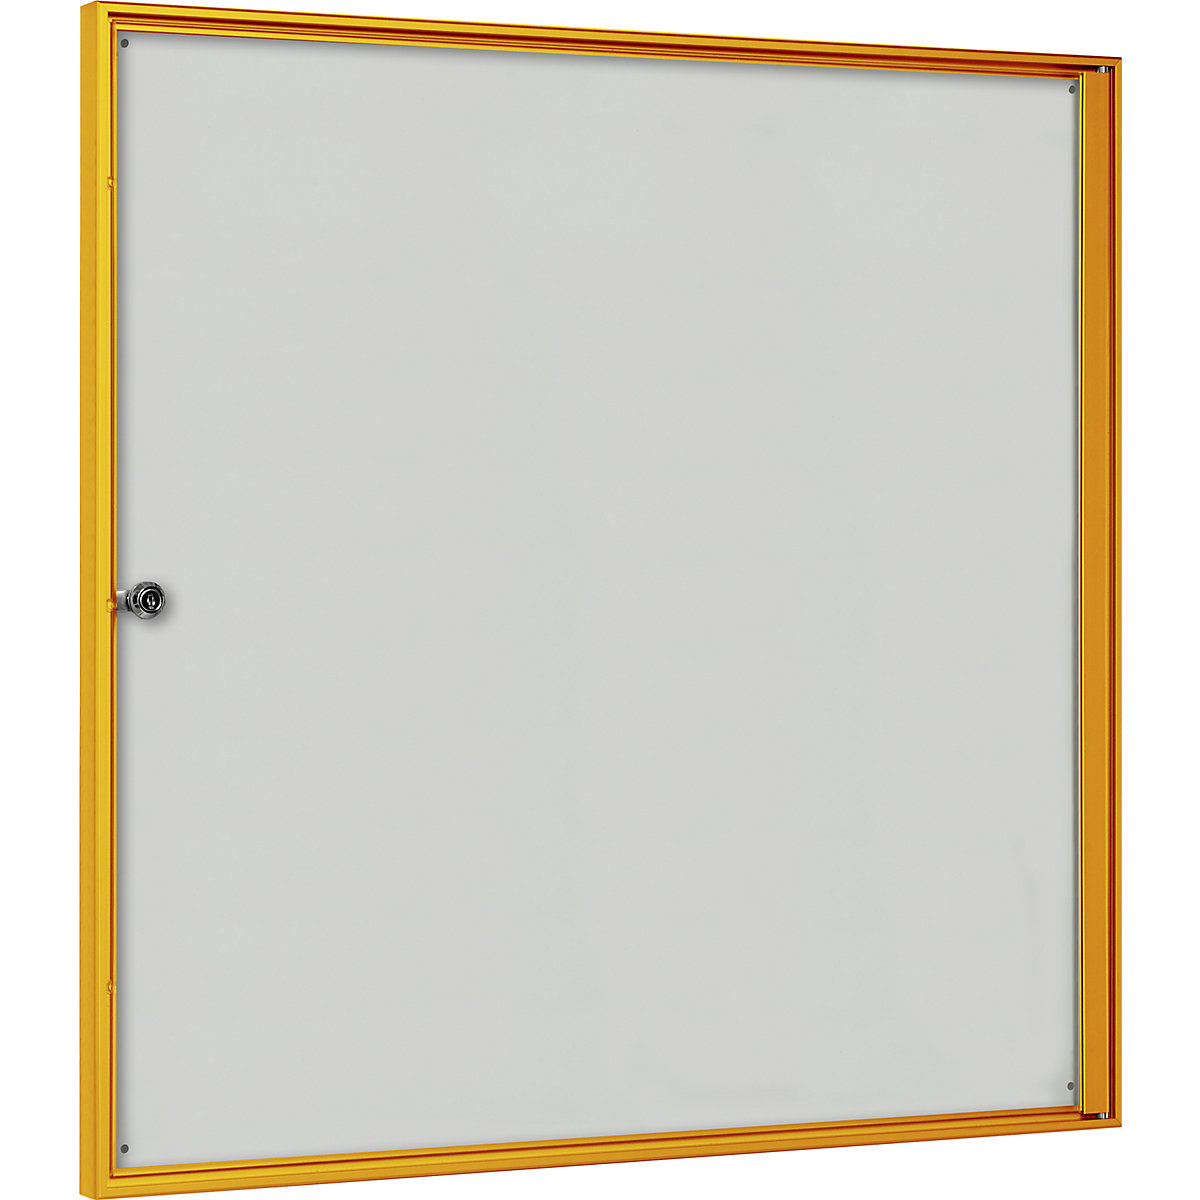 Schaukasten für innen, für Format 3 x 2 DIN A4, Rahmen gelb